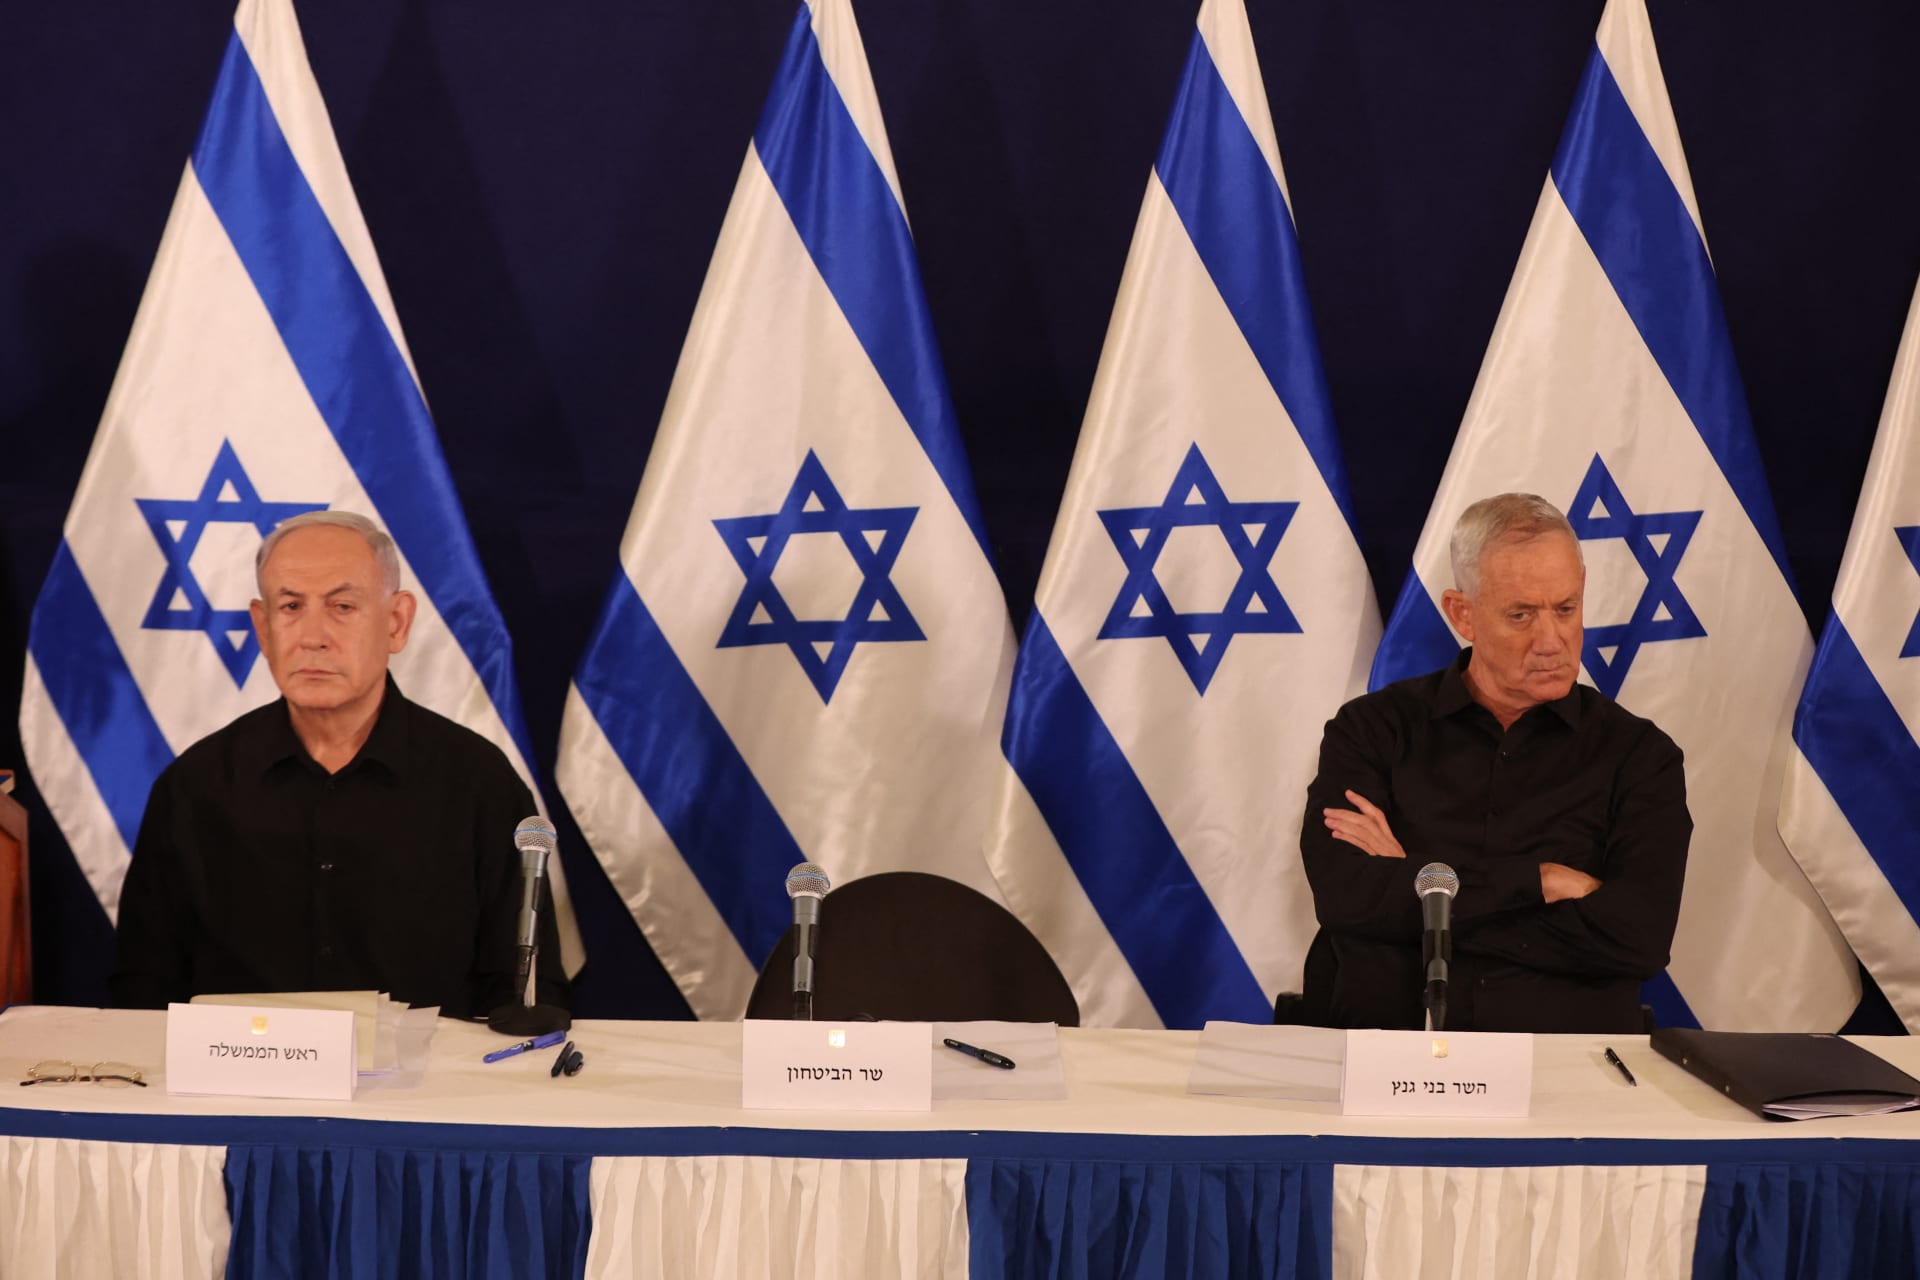 الانقسام في إسرائيل يتسع.. حزب غانتس يتحرك لحل الكنيست والليكود يرد